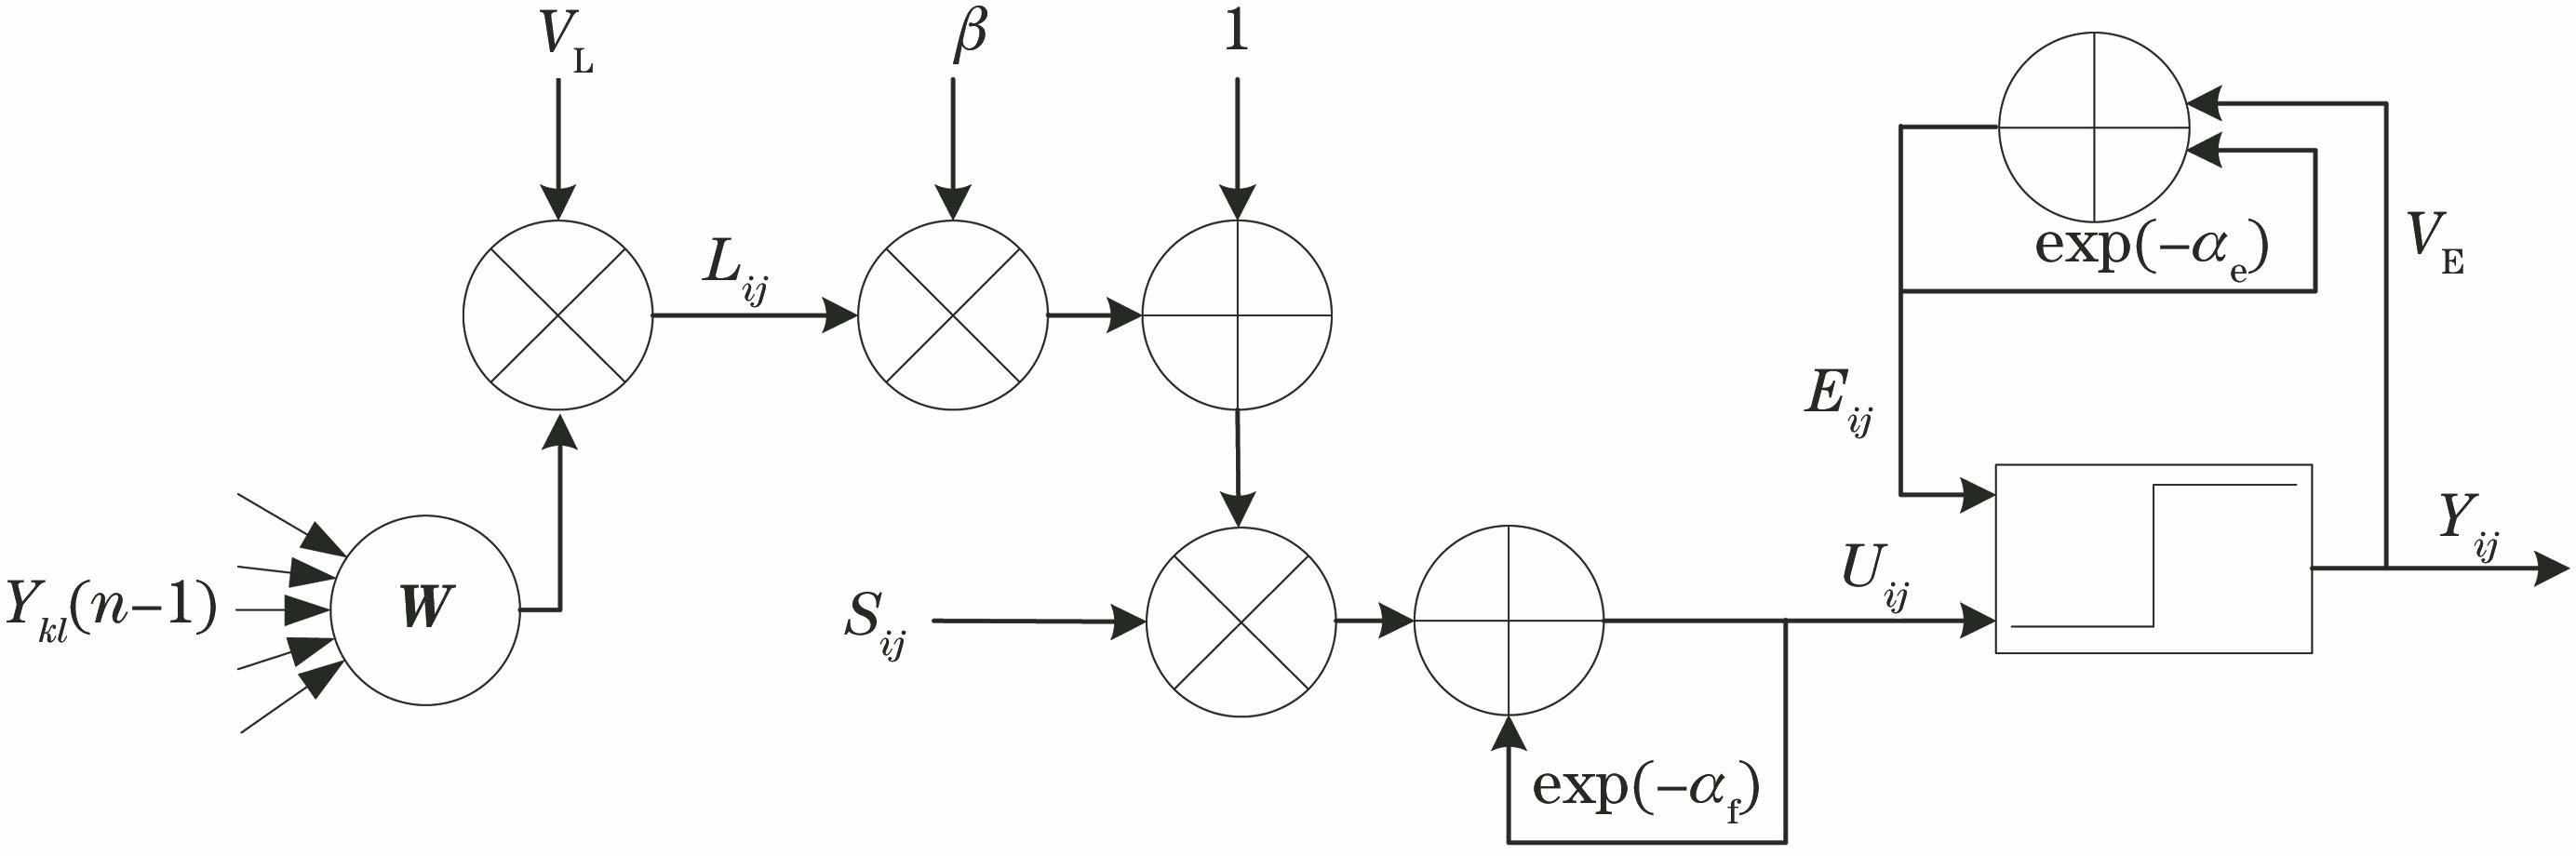 Architecture of the SPCNN model